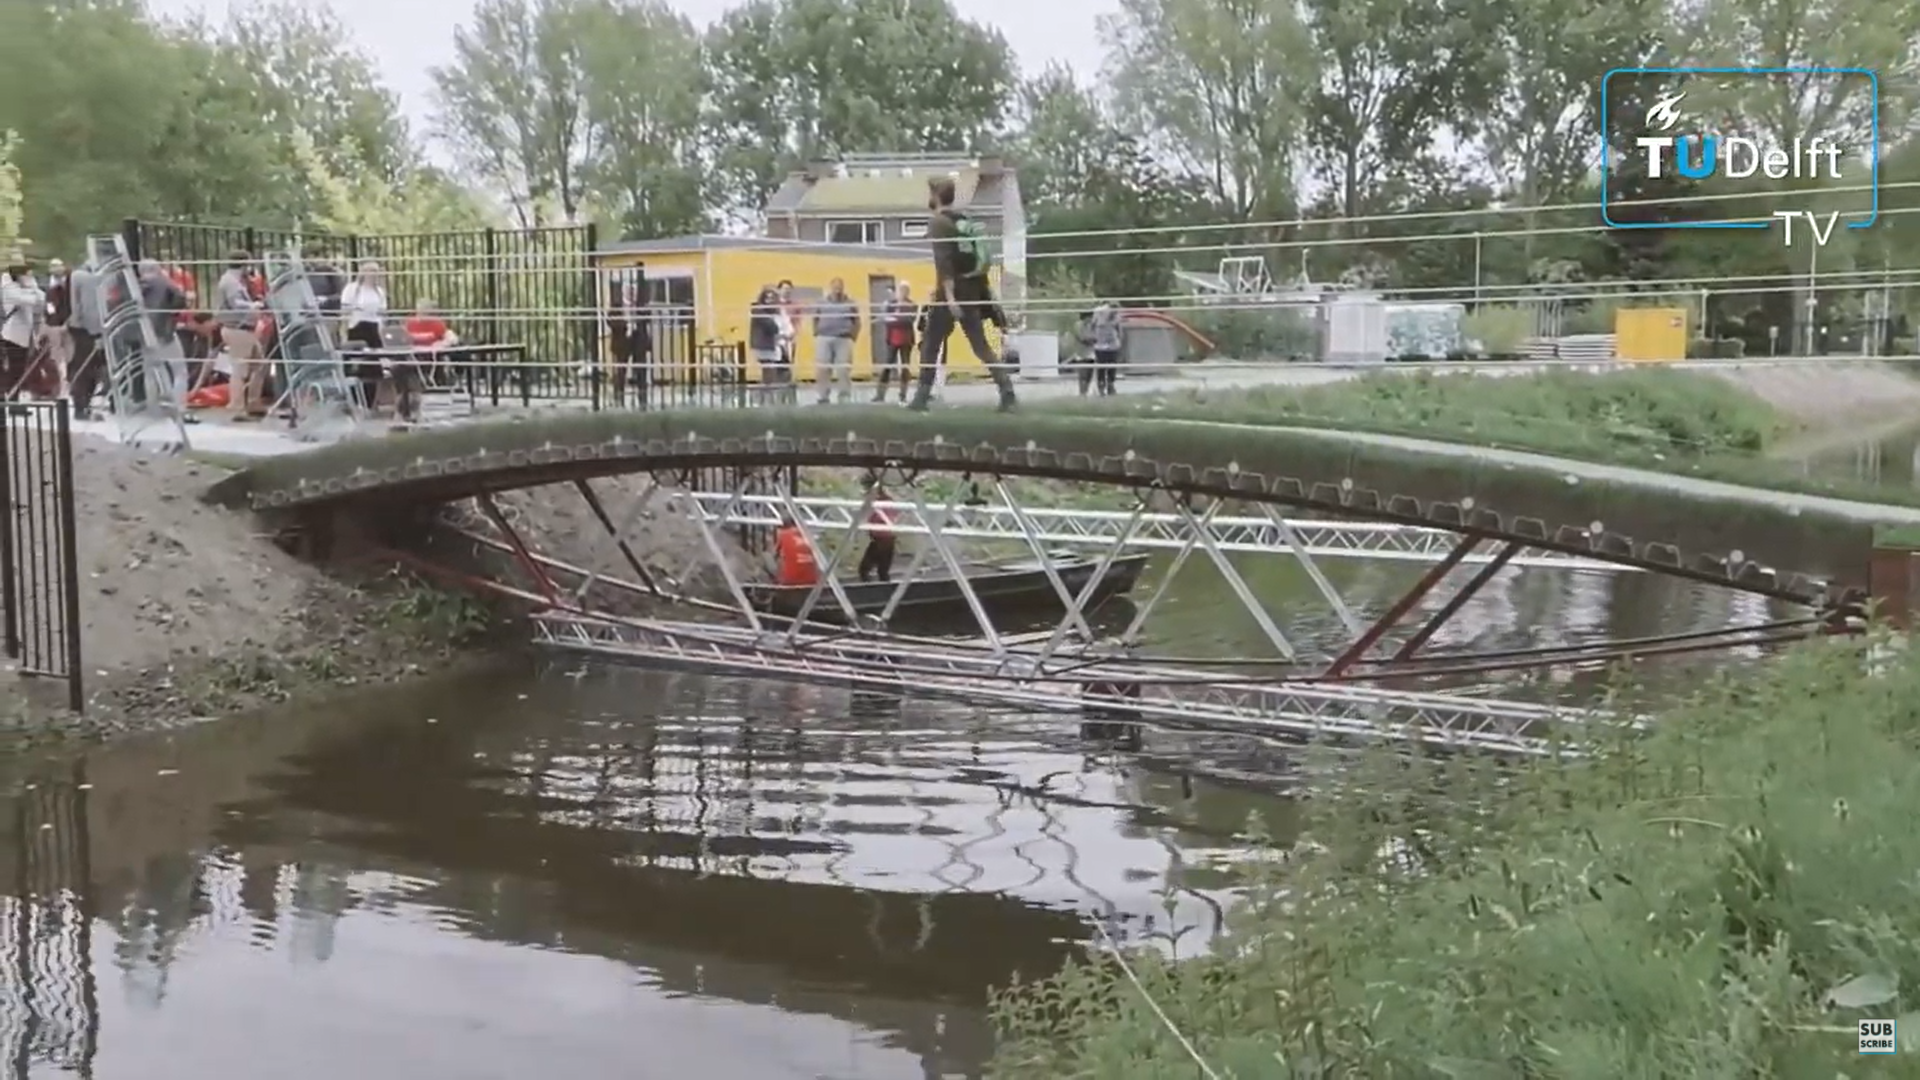 Puente de vidrio en la Universidad Técnica de Delft, Países Bajos	